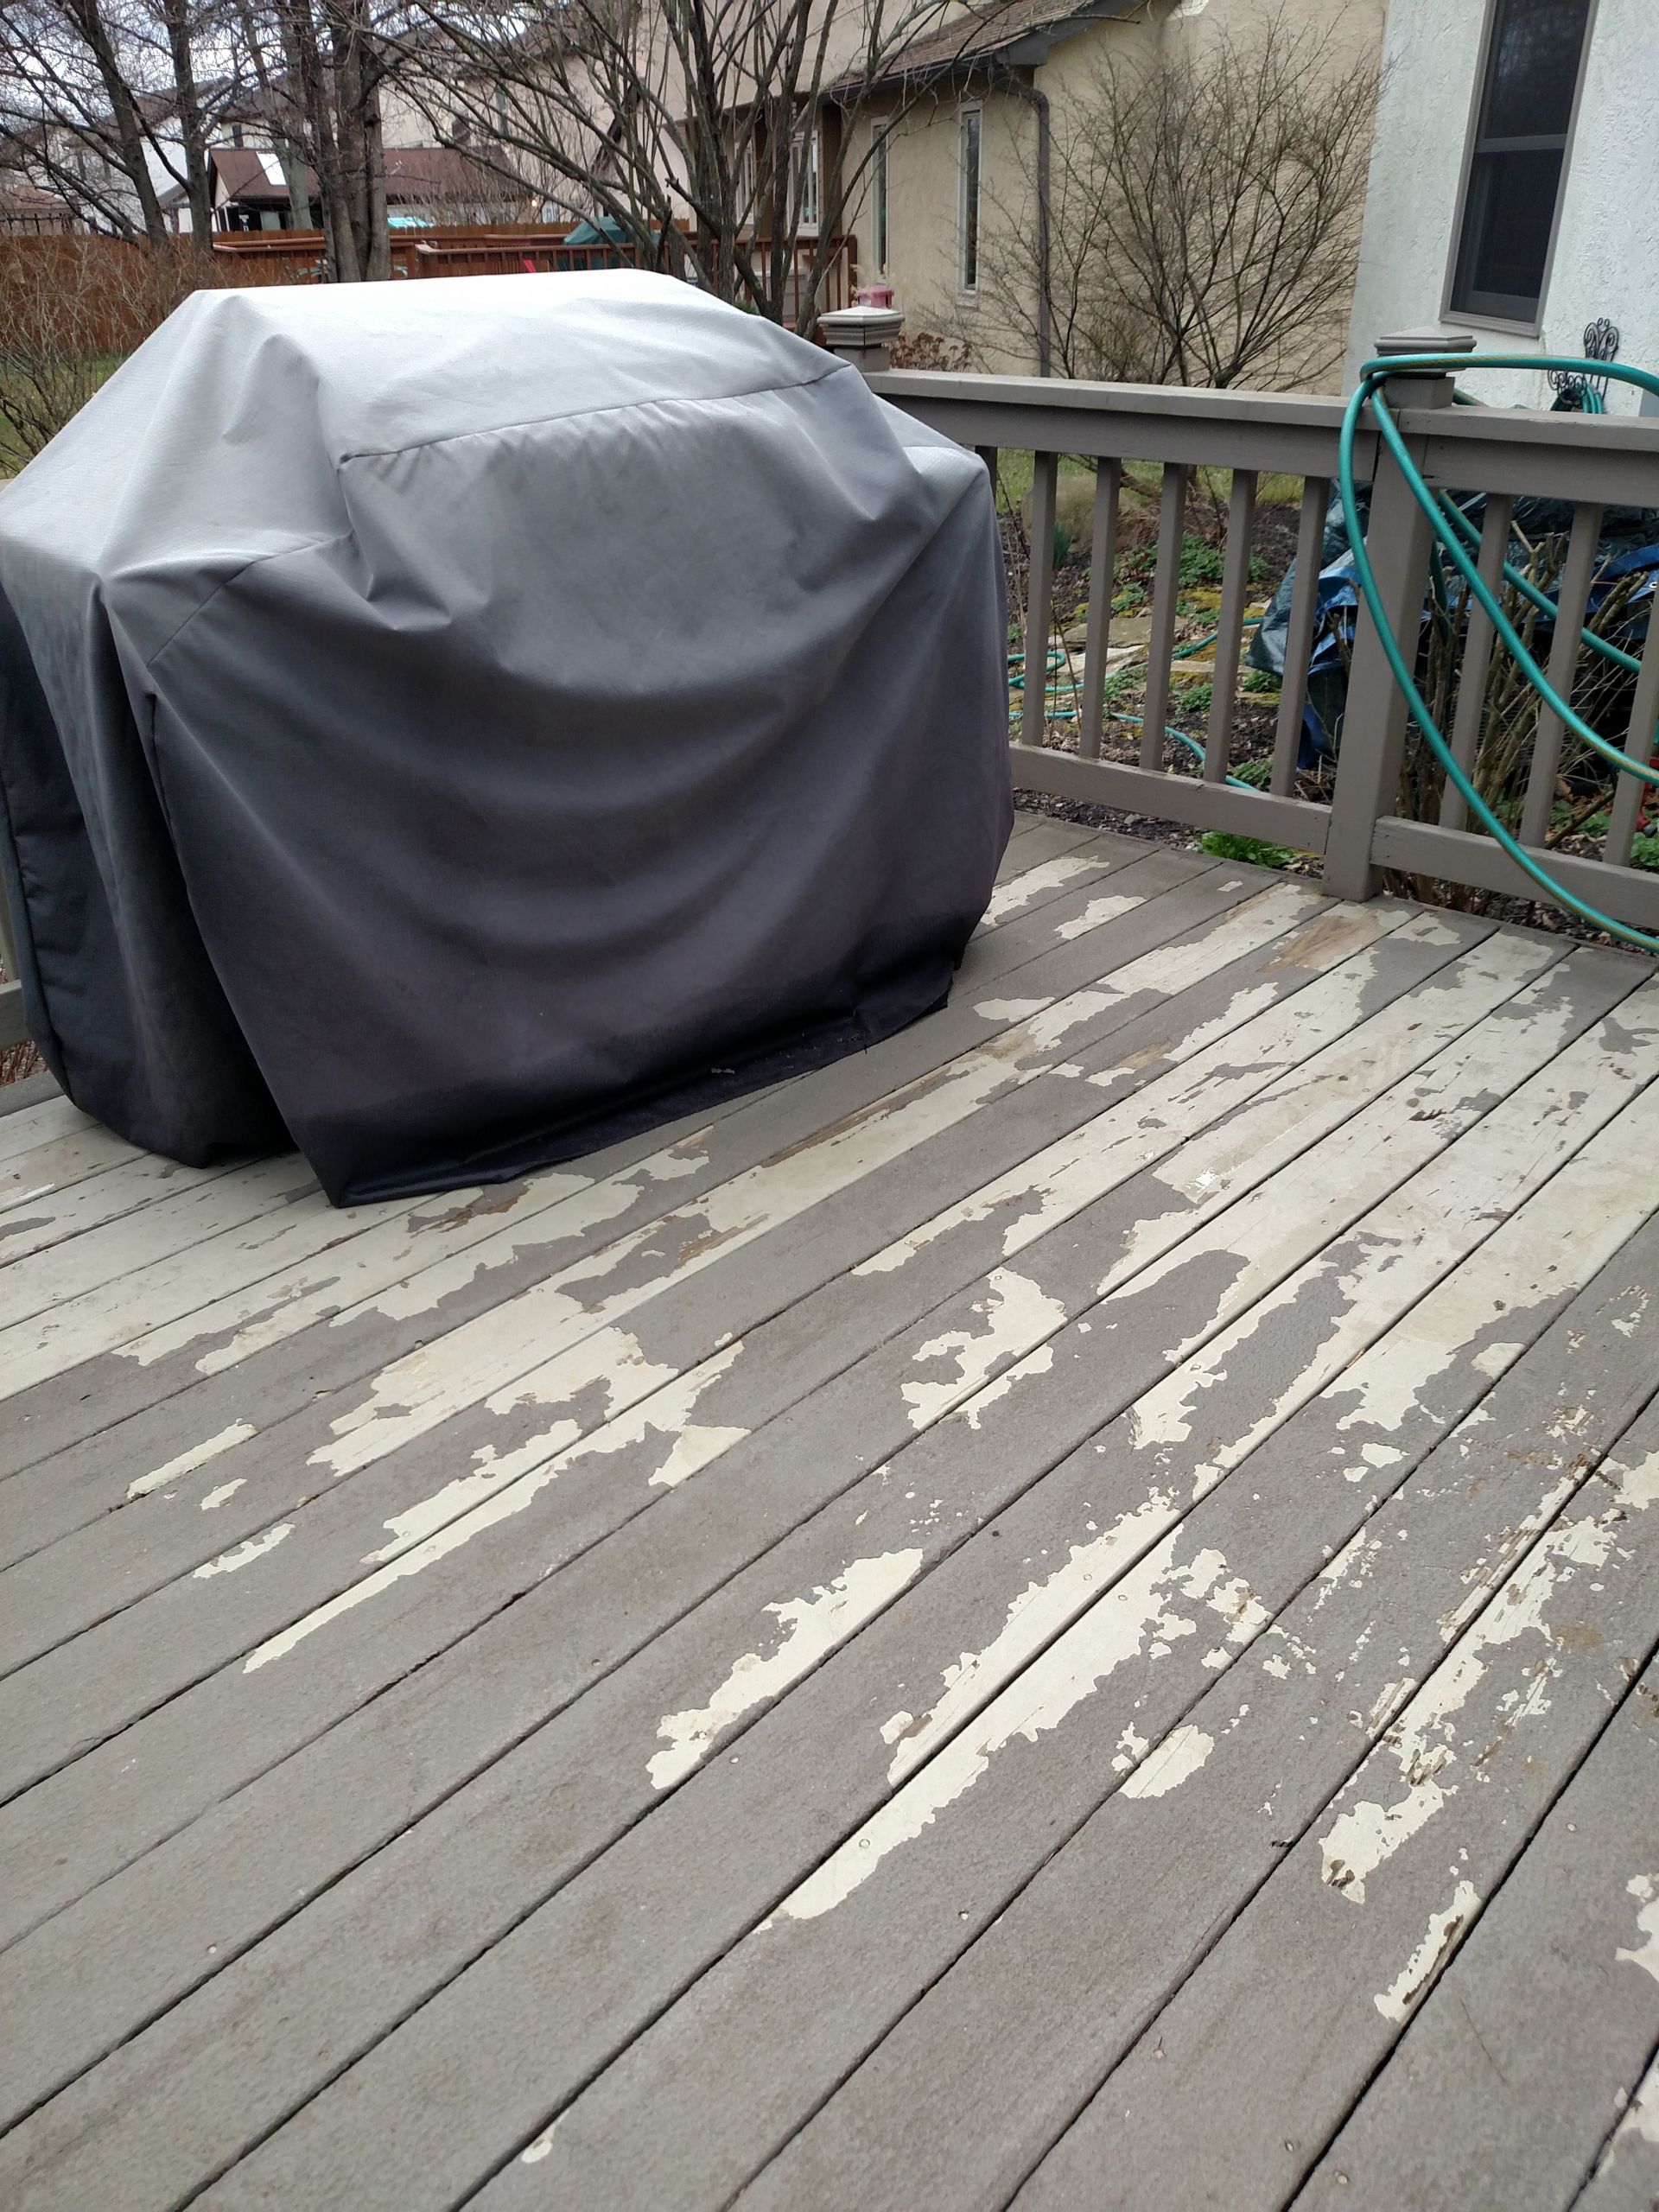 Rustoleum Restore Deck Paint Reviews
 Class Action Lawsuit against Rust Oleum Deck Restore